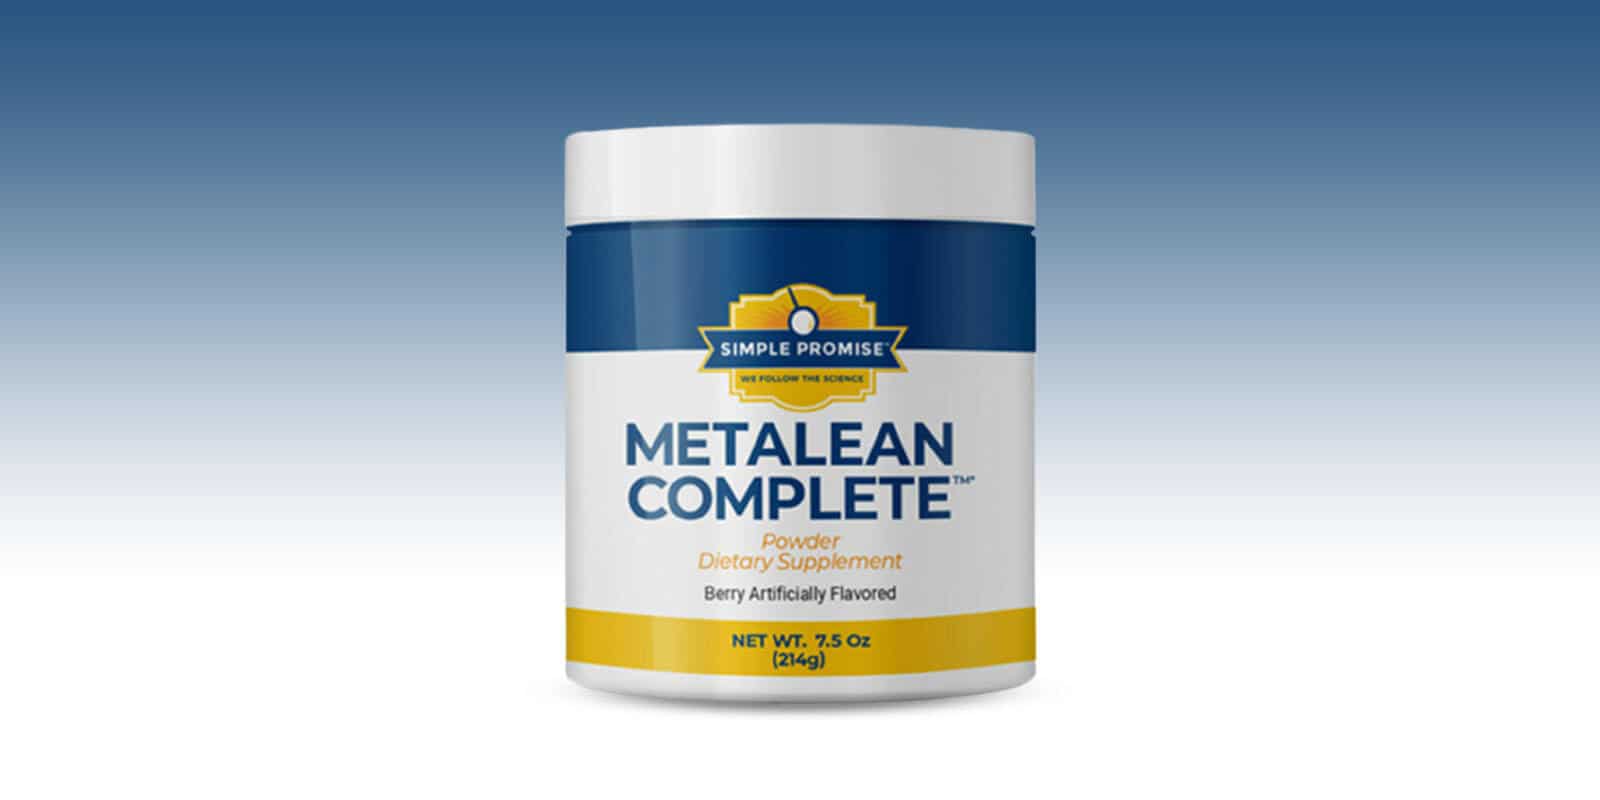 MetaLean-Complete-Reviews